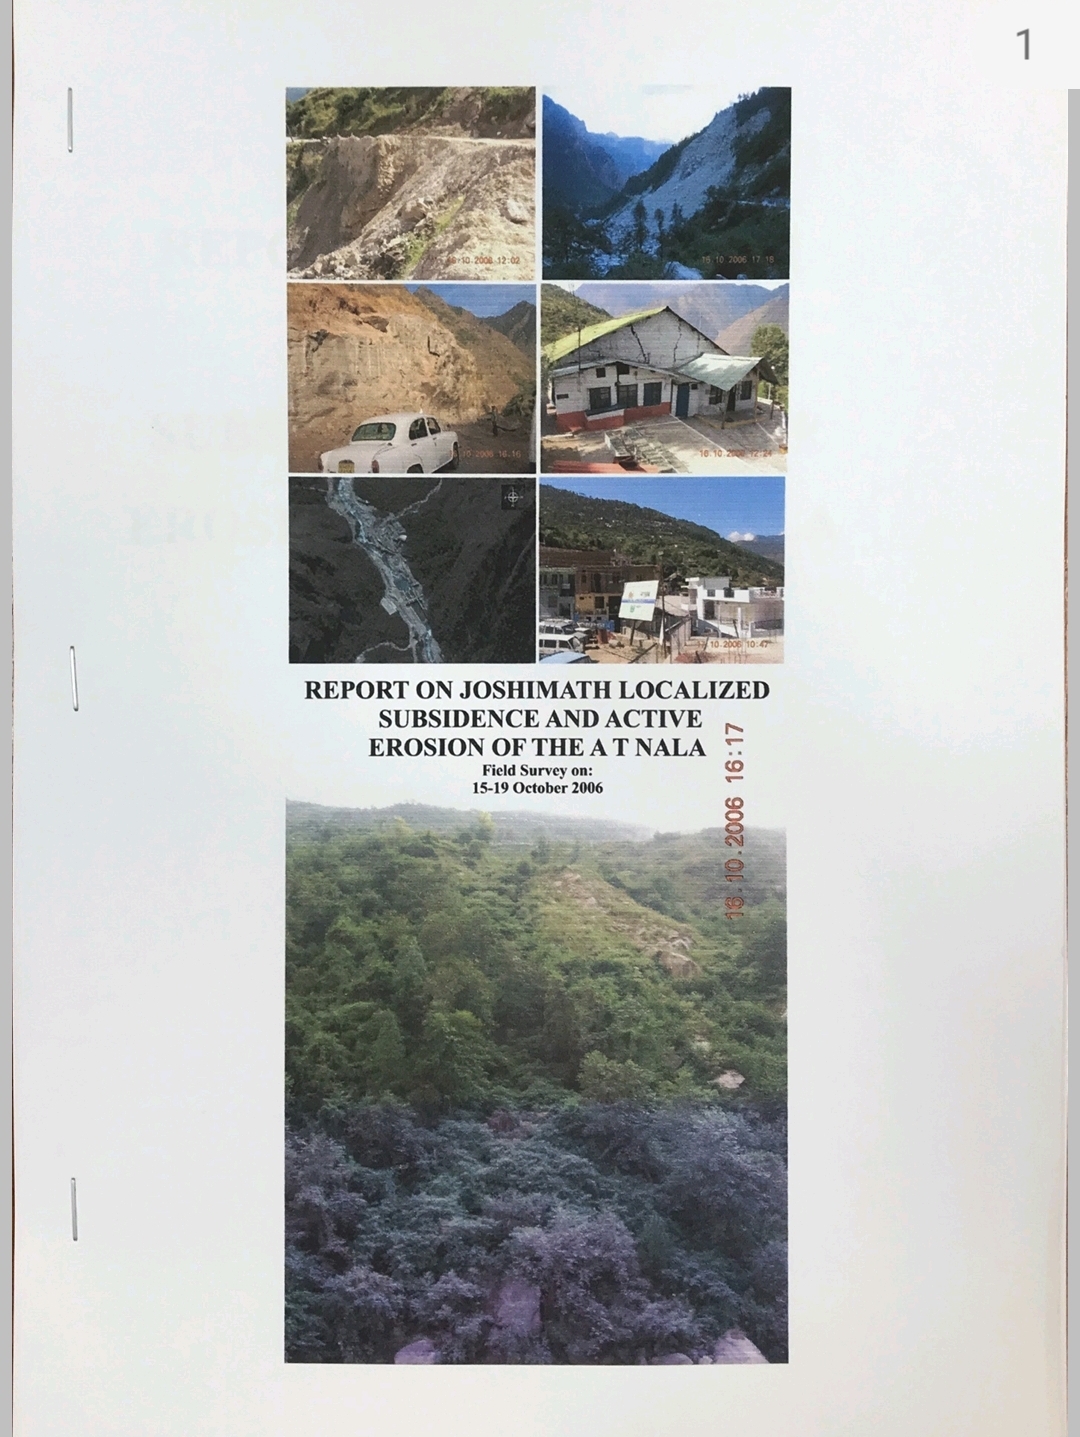 Uttarakhand Disaster Management